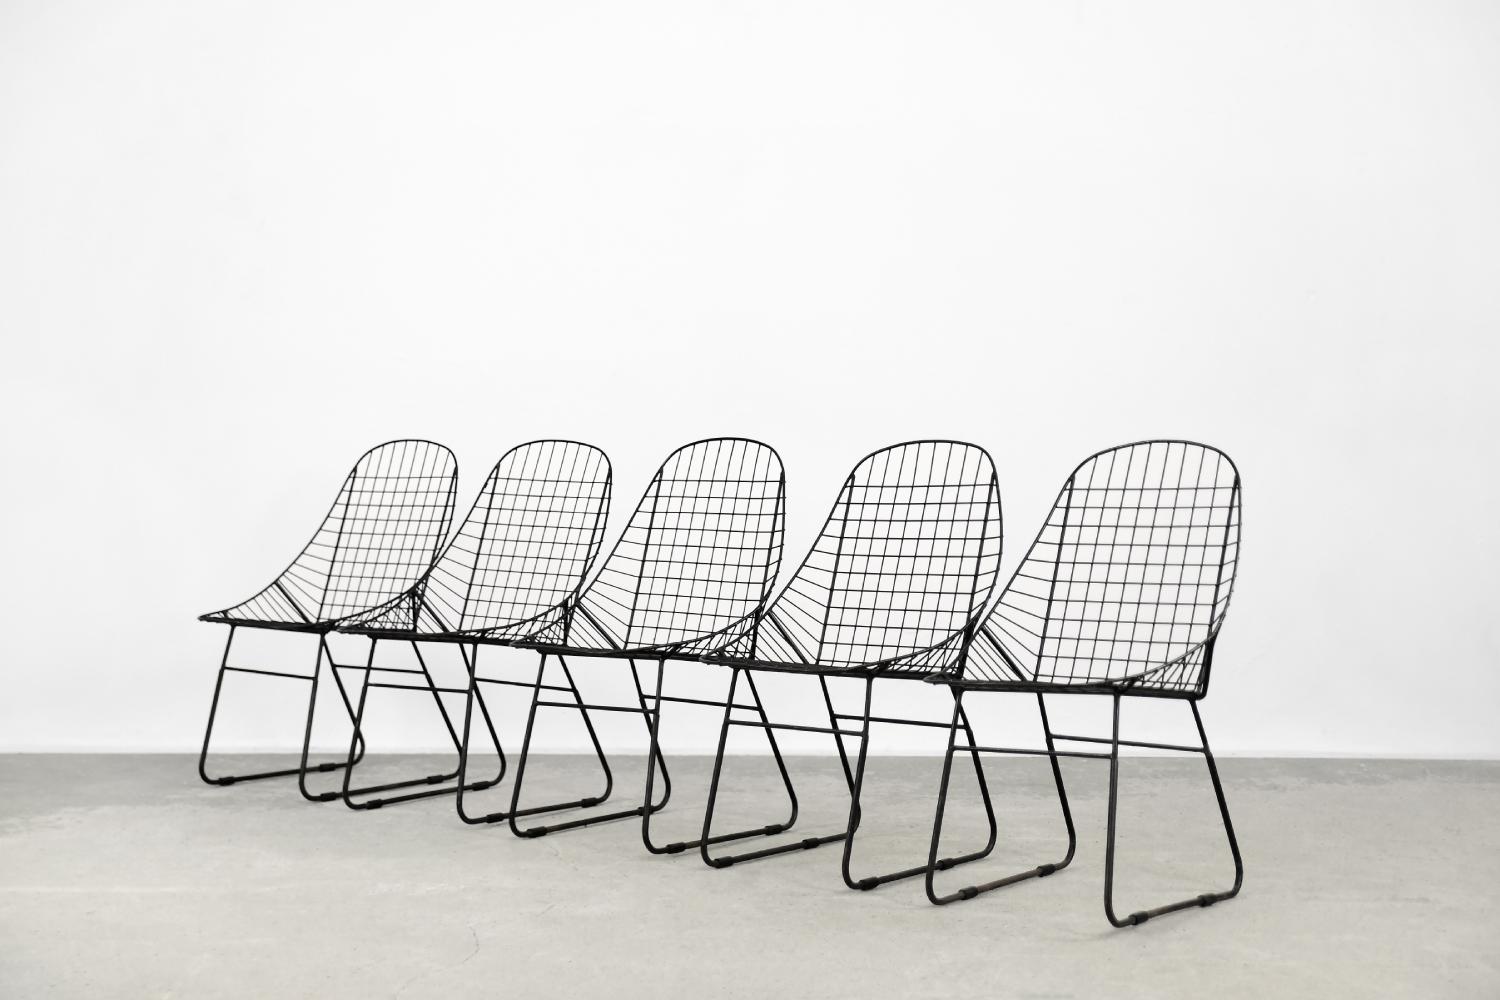 Dieses Set aus fünf minimalistischen Stühlen wurde in den 1960er Jahren entworfen. Wahrscheinlich handelt es sich um einen Prototyp einer schwedischen Manufaktur, und die Stühle wurden nie in Serie produziert. Sie haben einen stabilen Rahmen aus